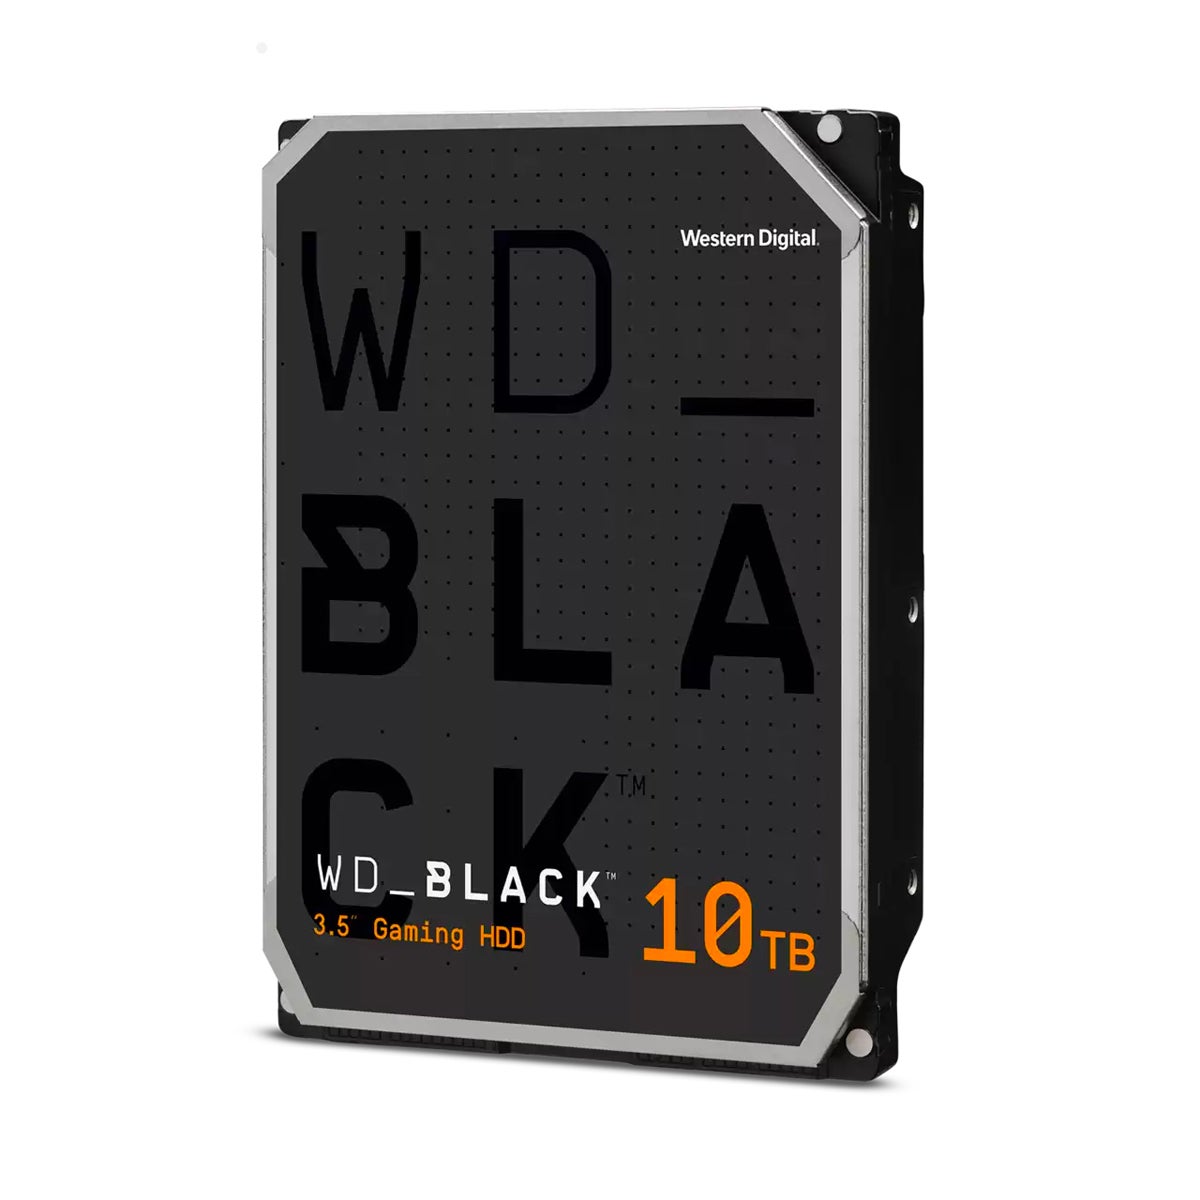 Western Digital Black series HDDs.